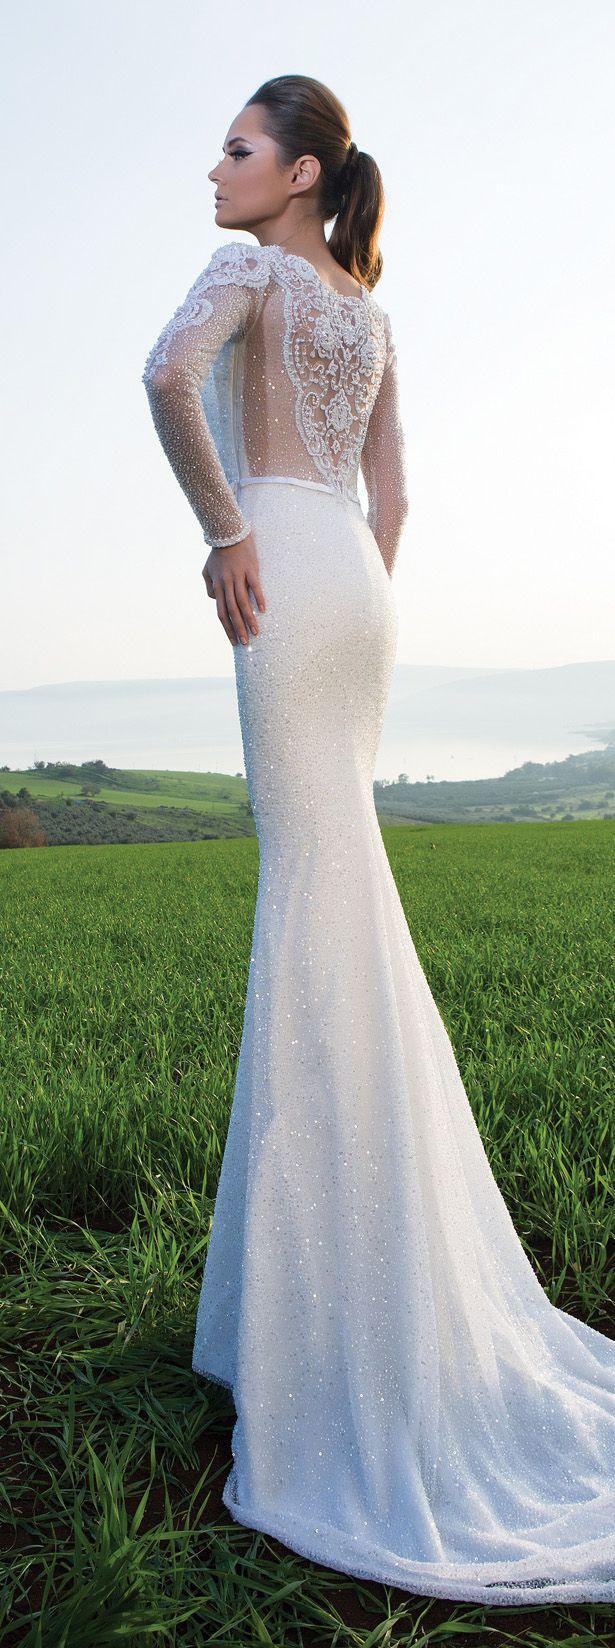 زفاف - Shabi & Israel Haute Couture 2015 Wedding Dresses